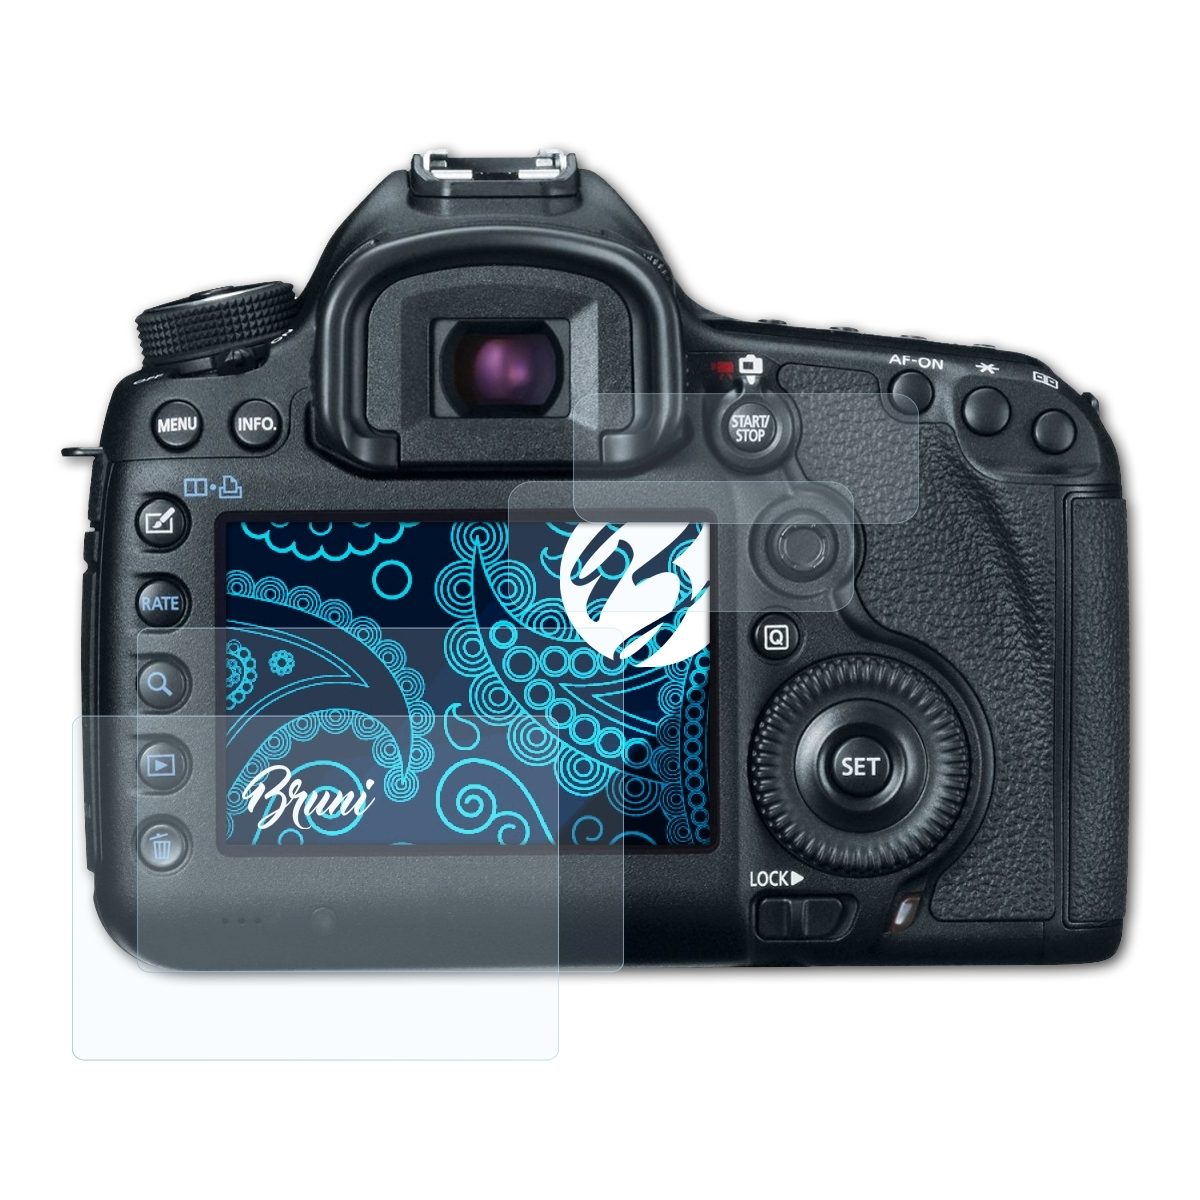 Schutzfolie(für BRUNI 5D) Canon Basics-Clear 2x EOS